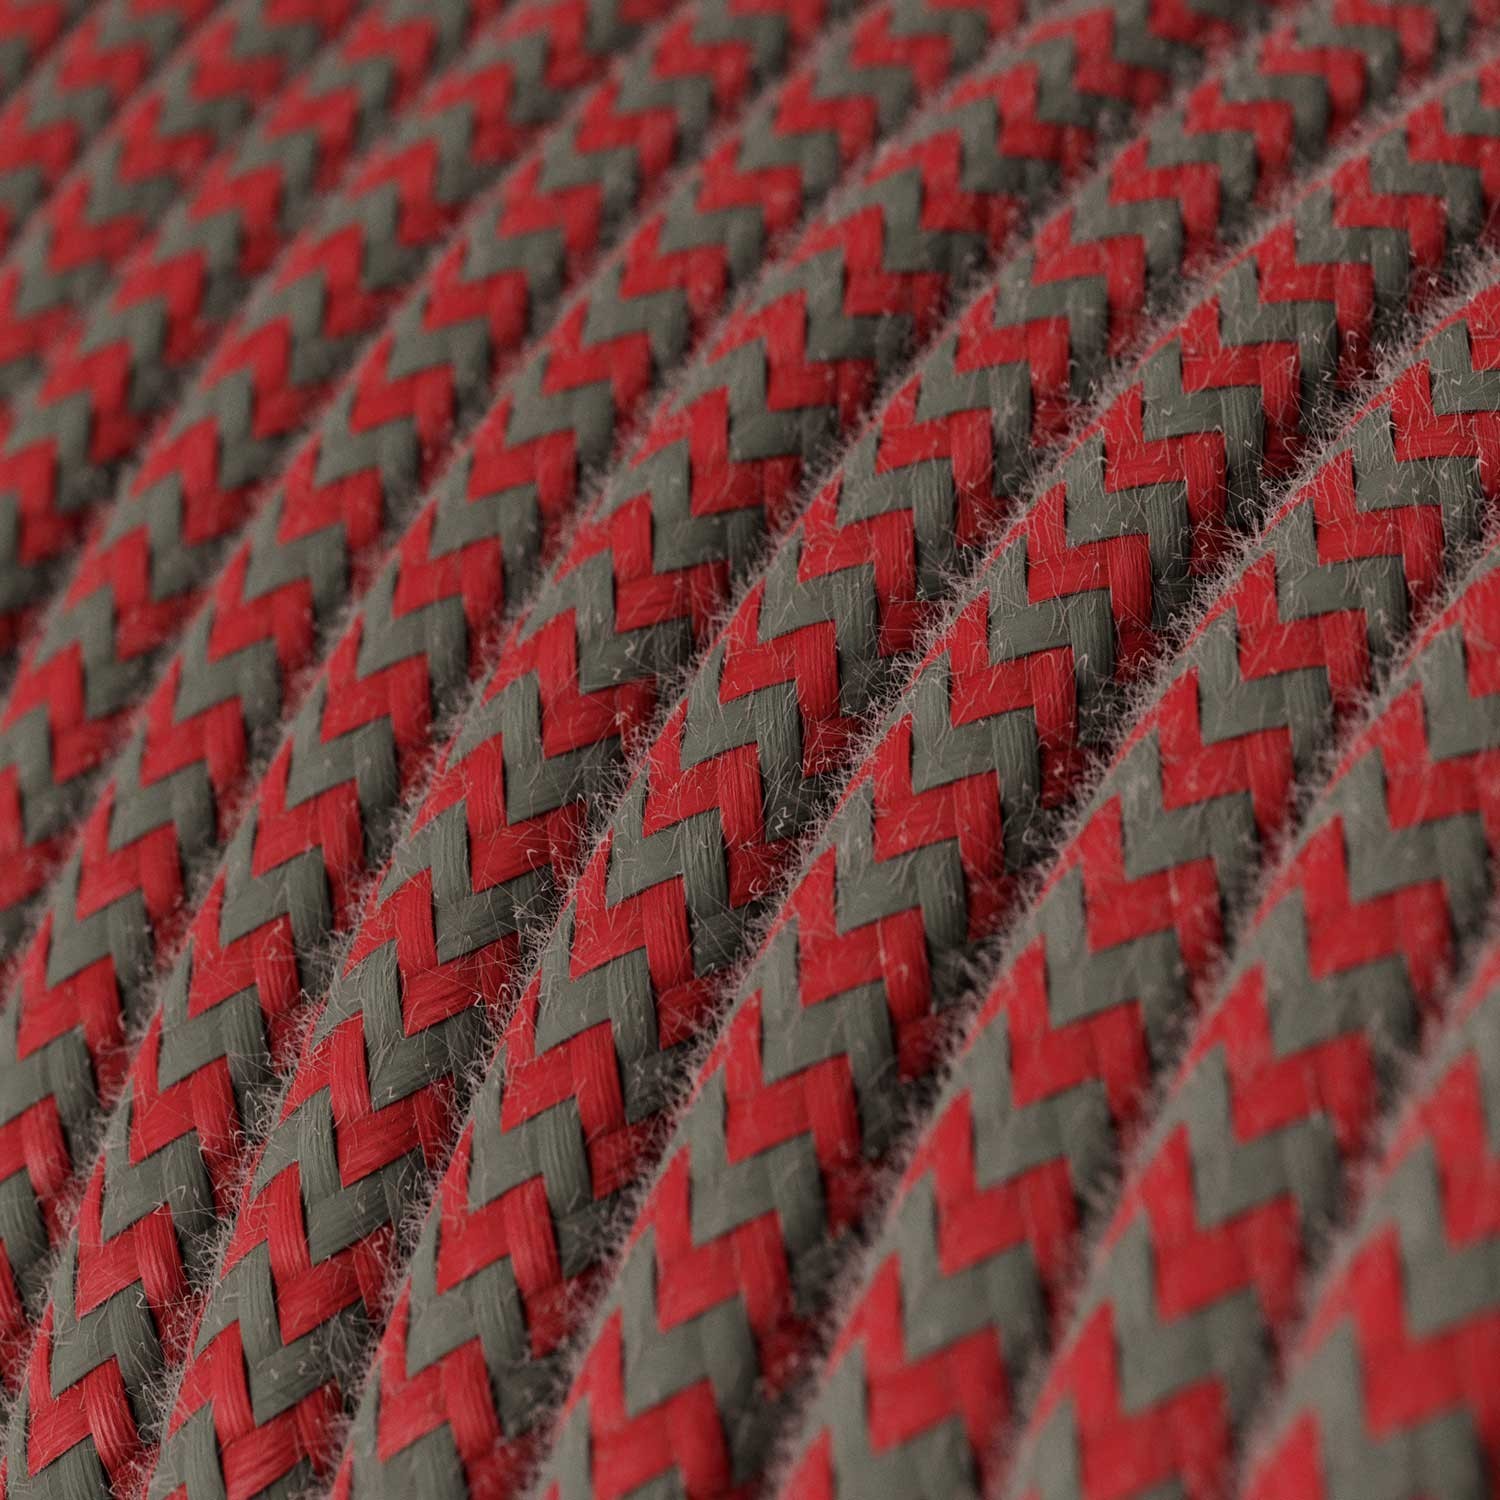 Svietidlo pre tienidlo do zásuvky Snake Cik-Cak s farebným textilným káblom so vzorom cik-cak